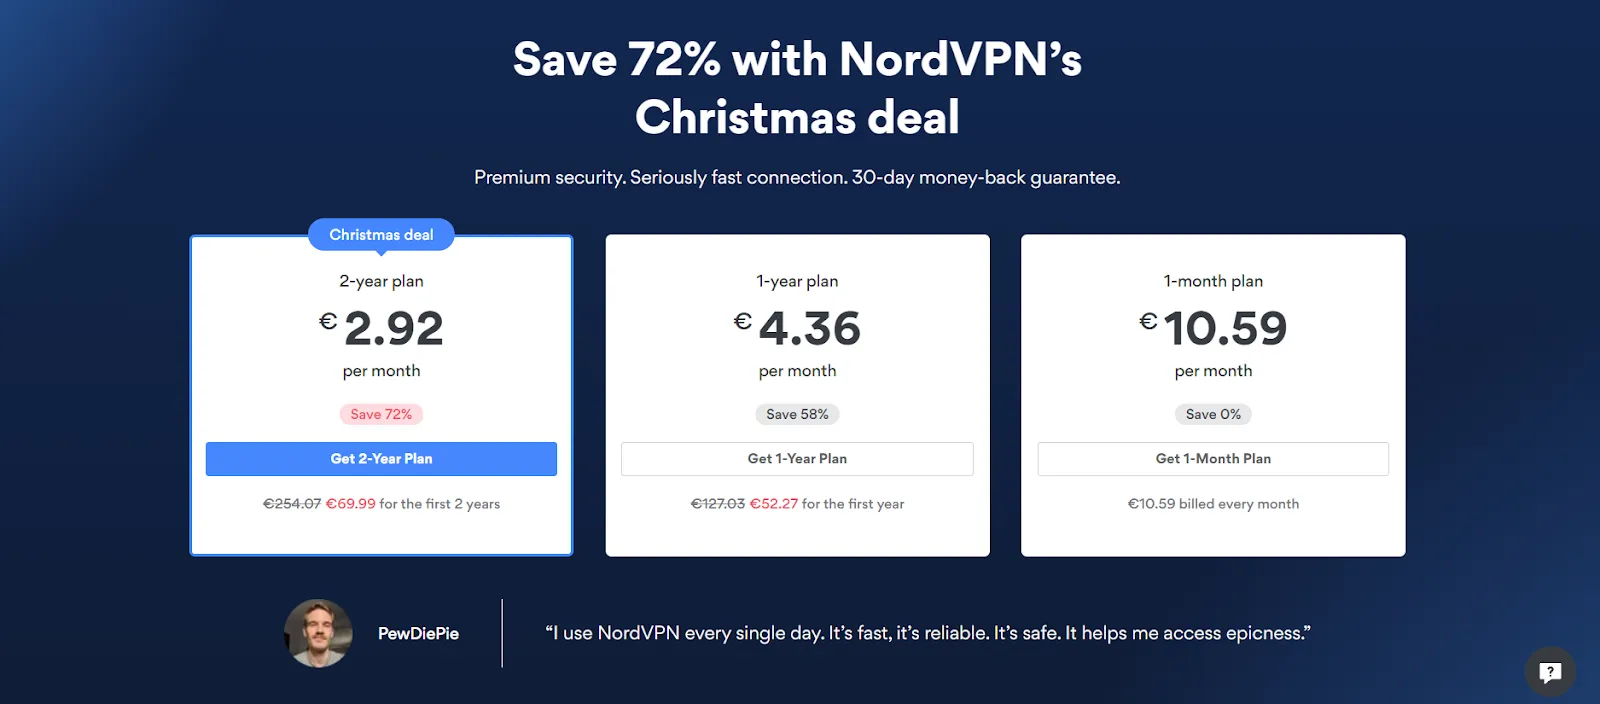 NordVPN Price